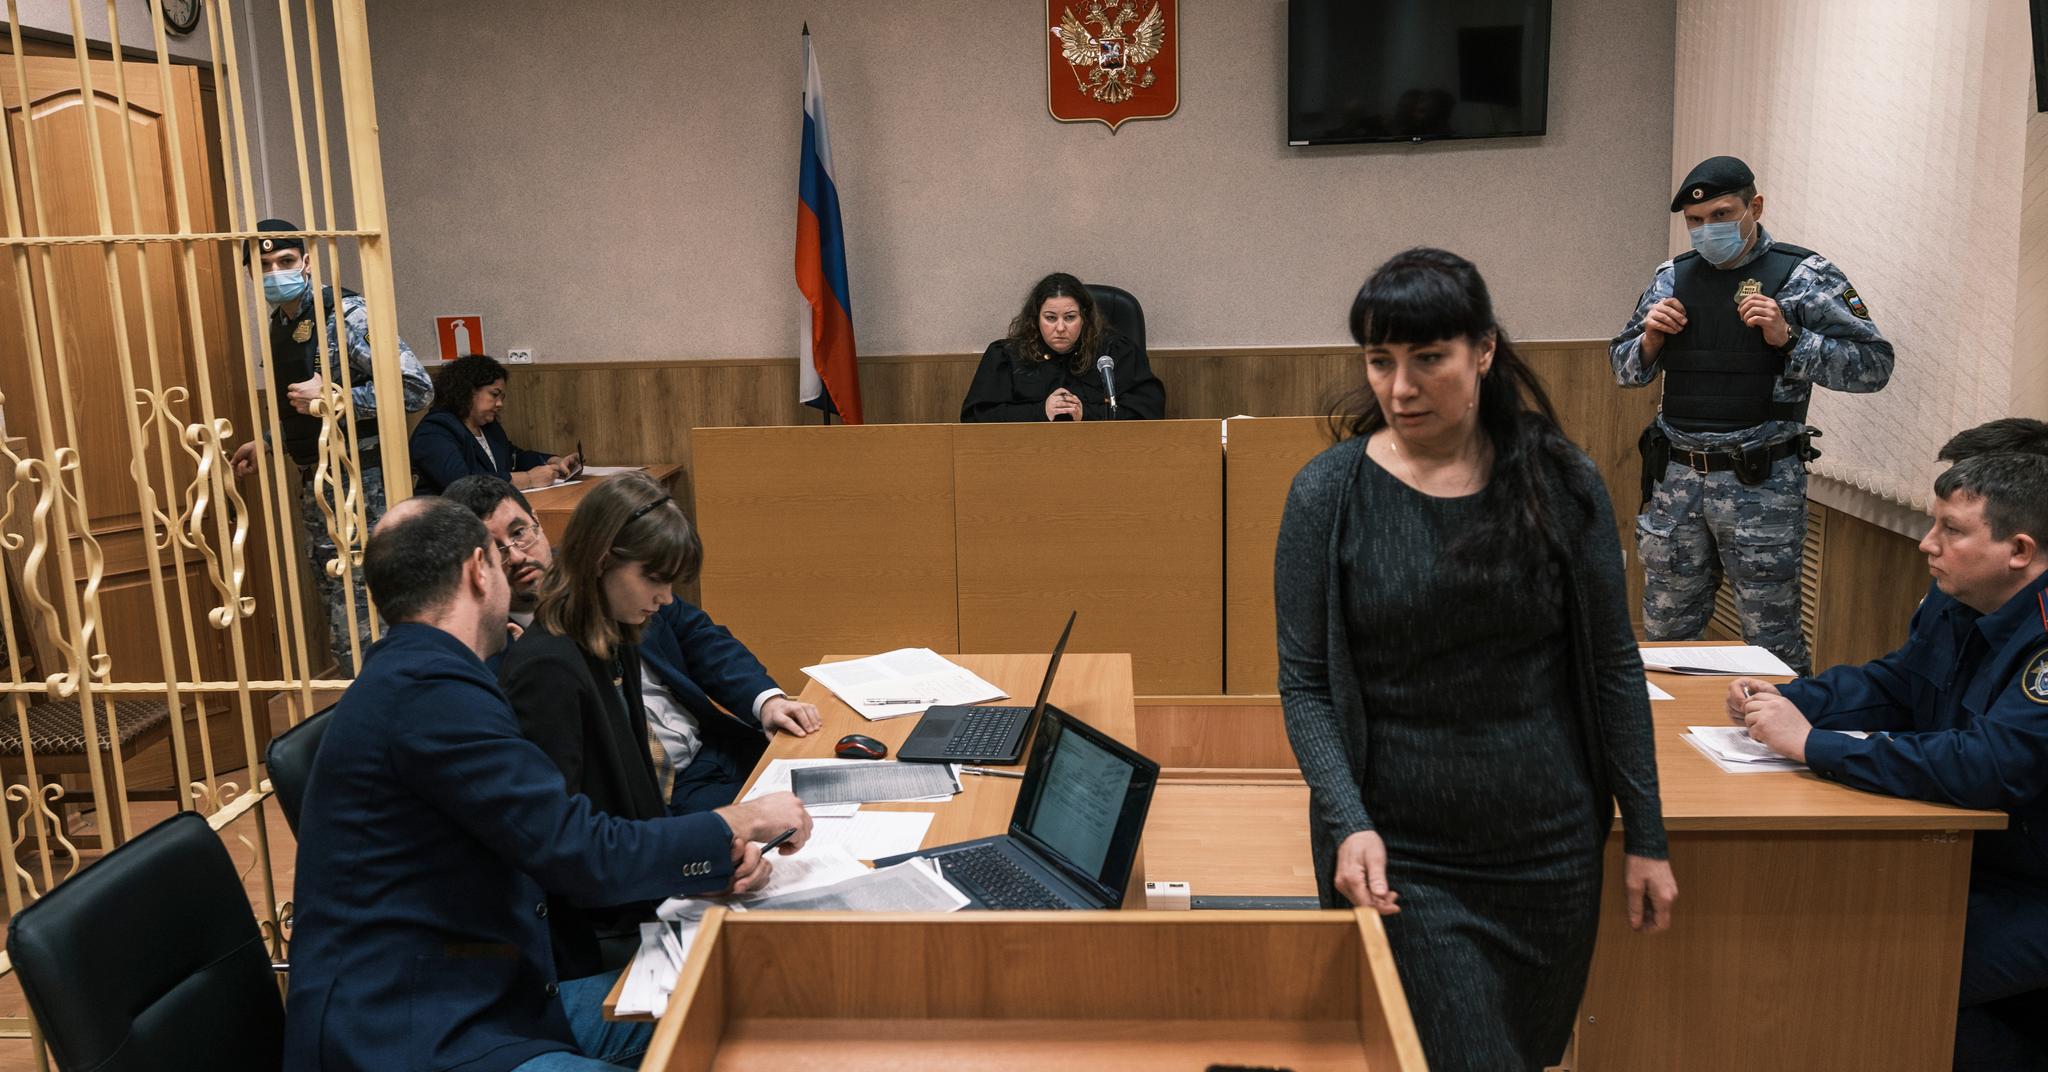 Natalja Krivtsova er Olesia Krivtsovas (19) mor. Her skal hun vitne under et fengslingsmøte for datteren. Datteren sitter mellom to advokater på venstre side.